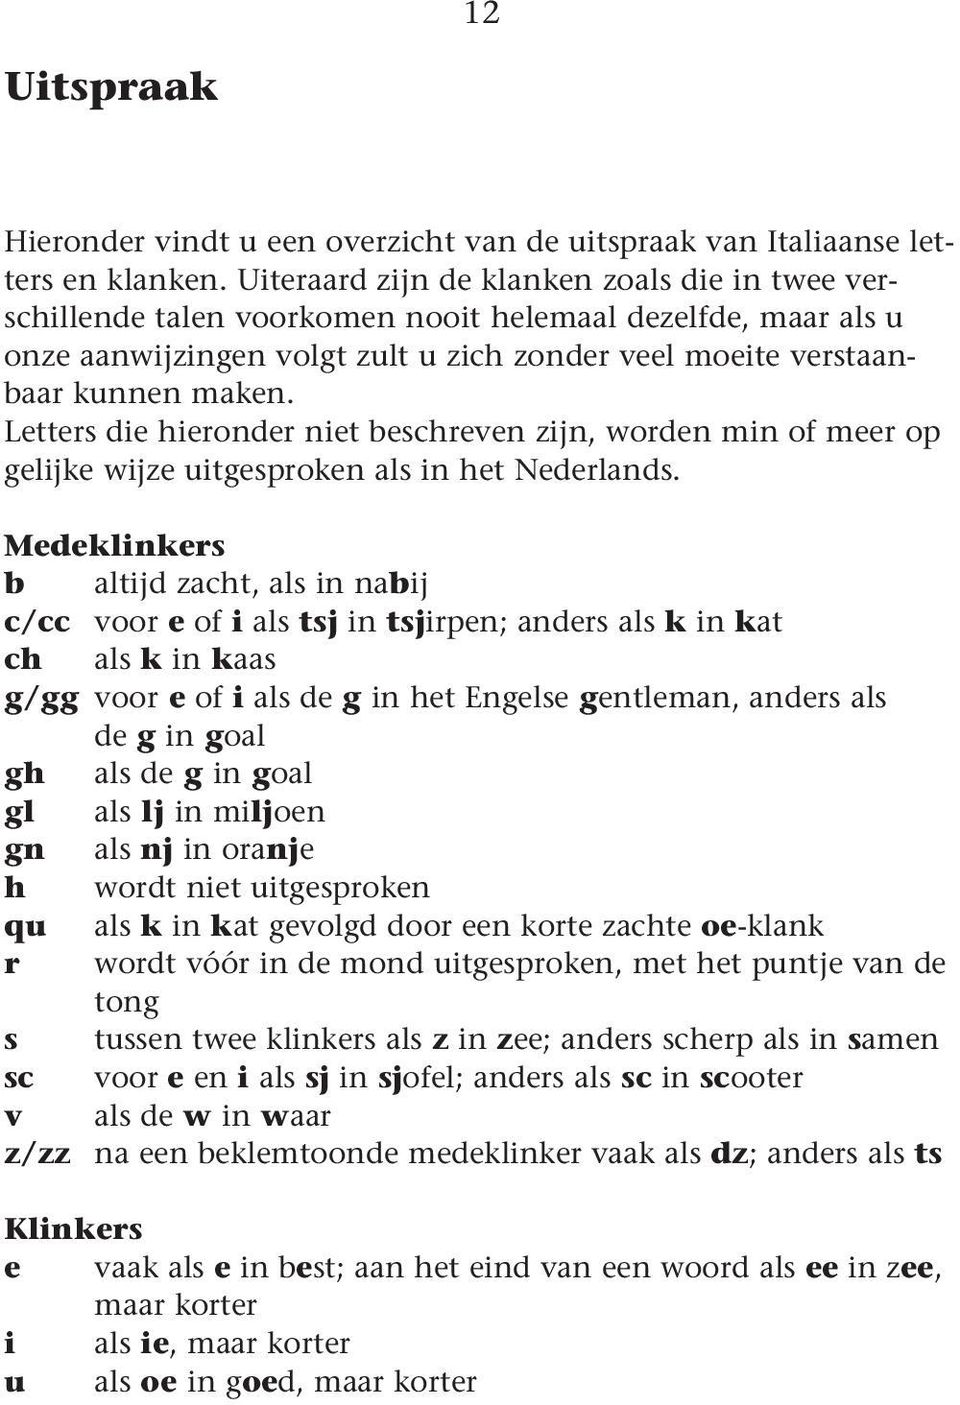 Letters die hieronder niet beshreven zijn, worden in o eer op gelijke wijze uitgesproken als in het Nederlands.